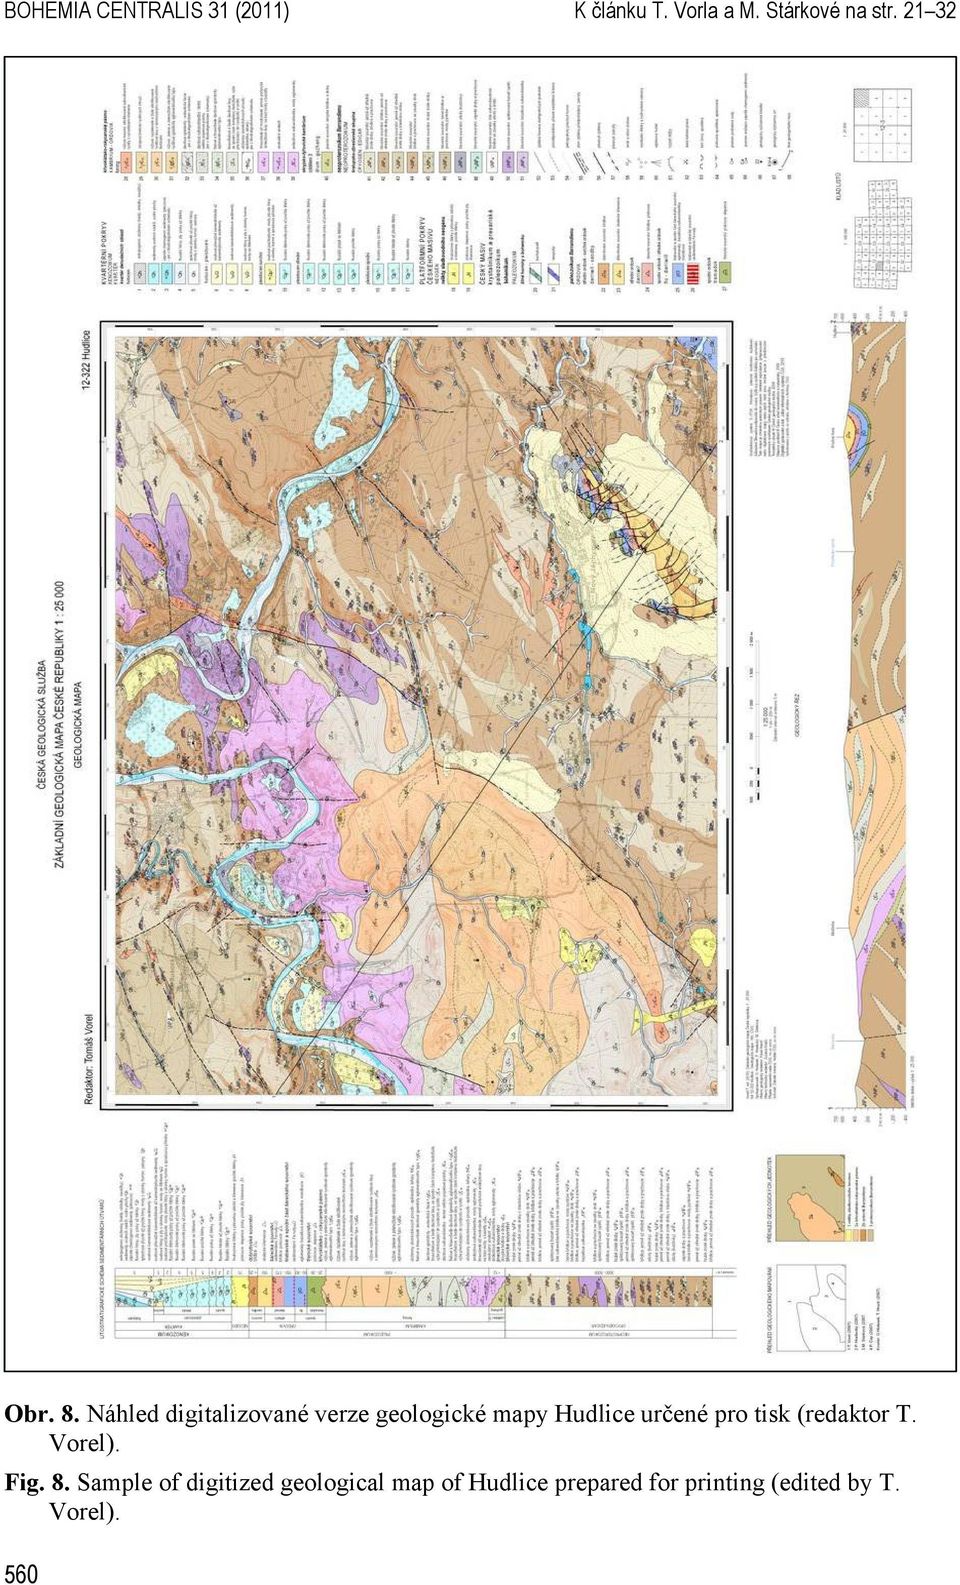 Náhled digitalizované verze geologické mapy Hudlice určené pro tisk